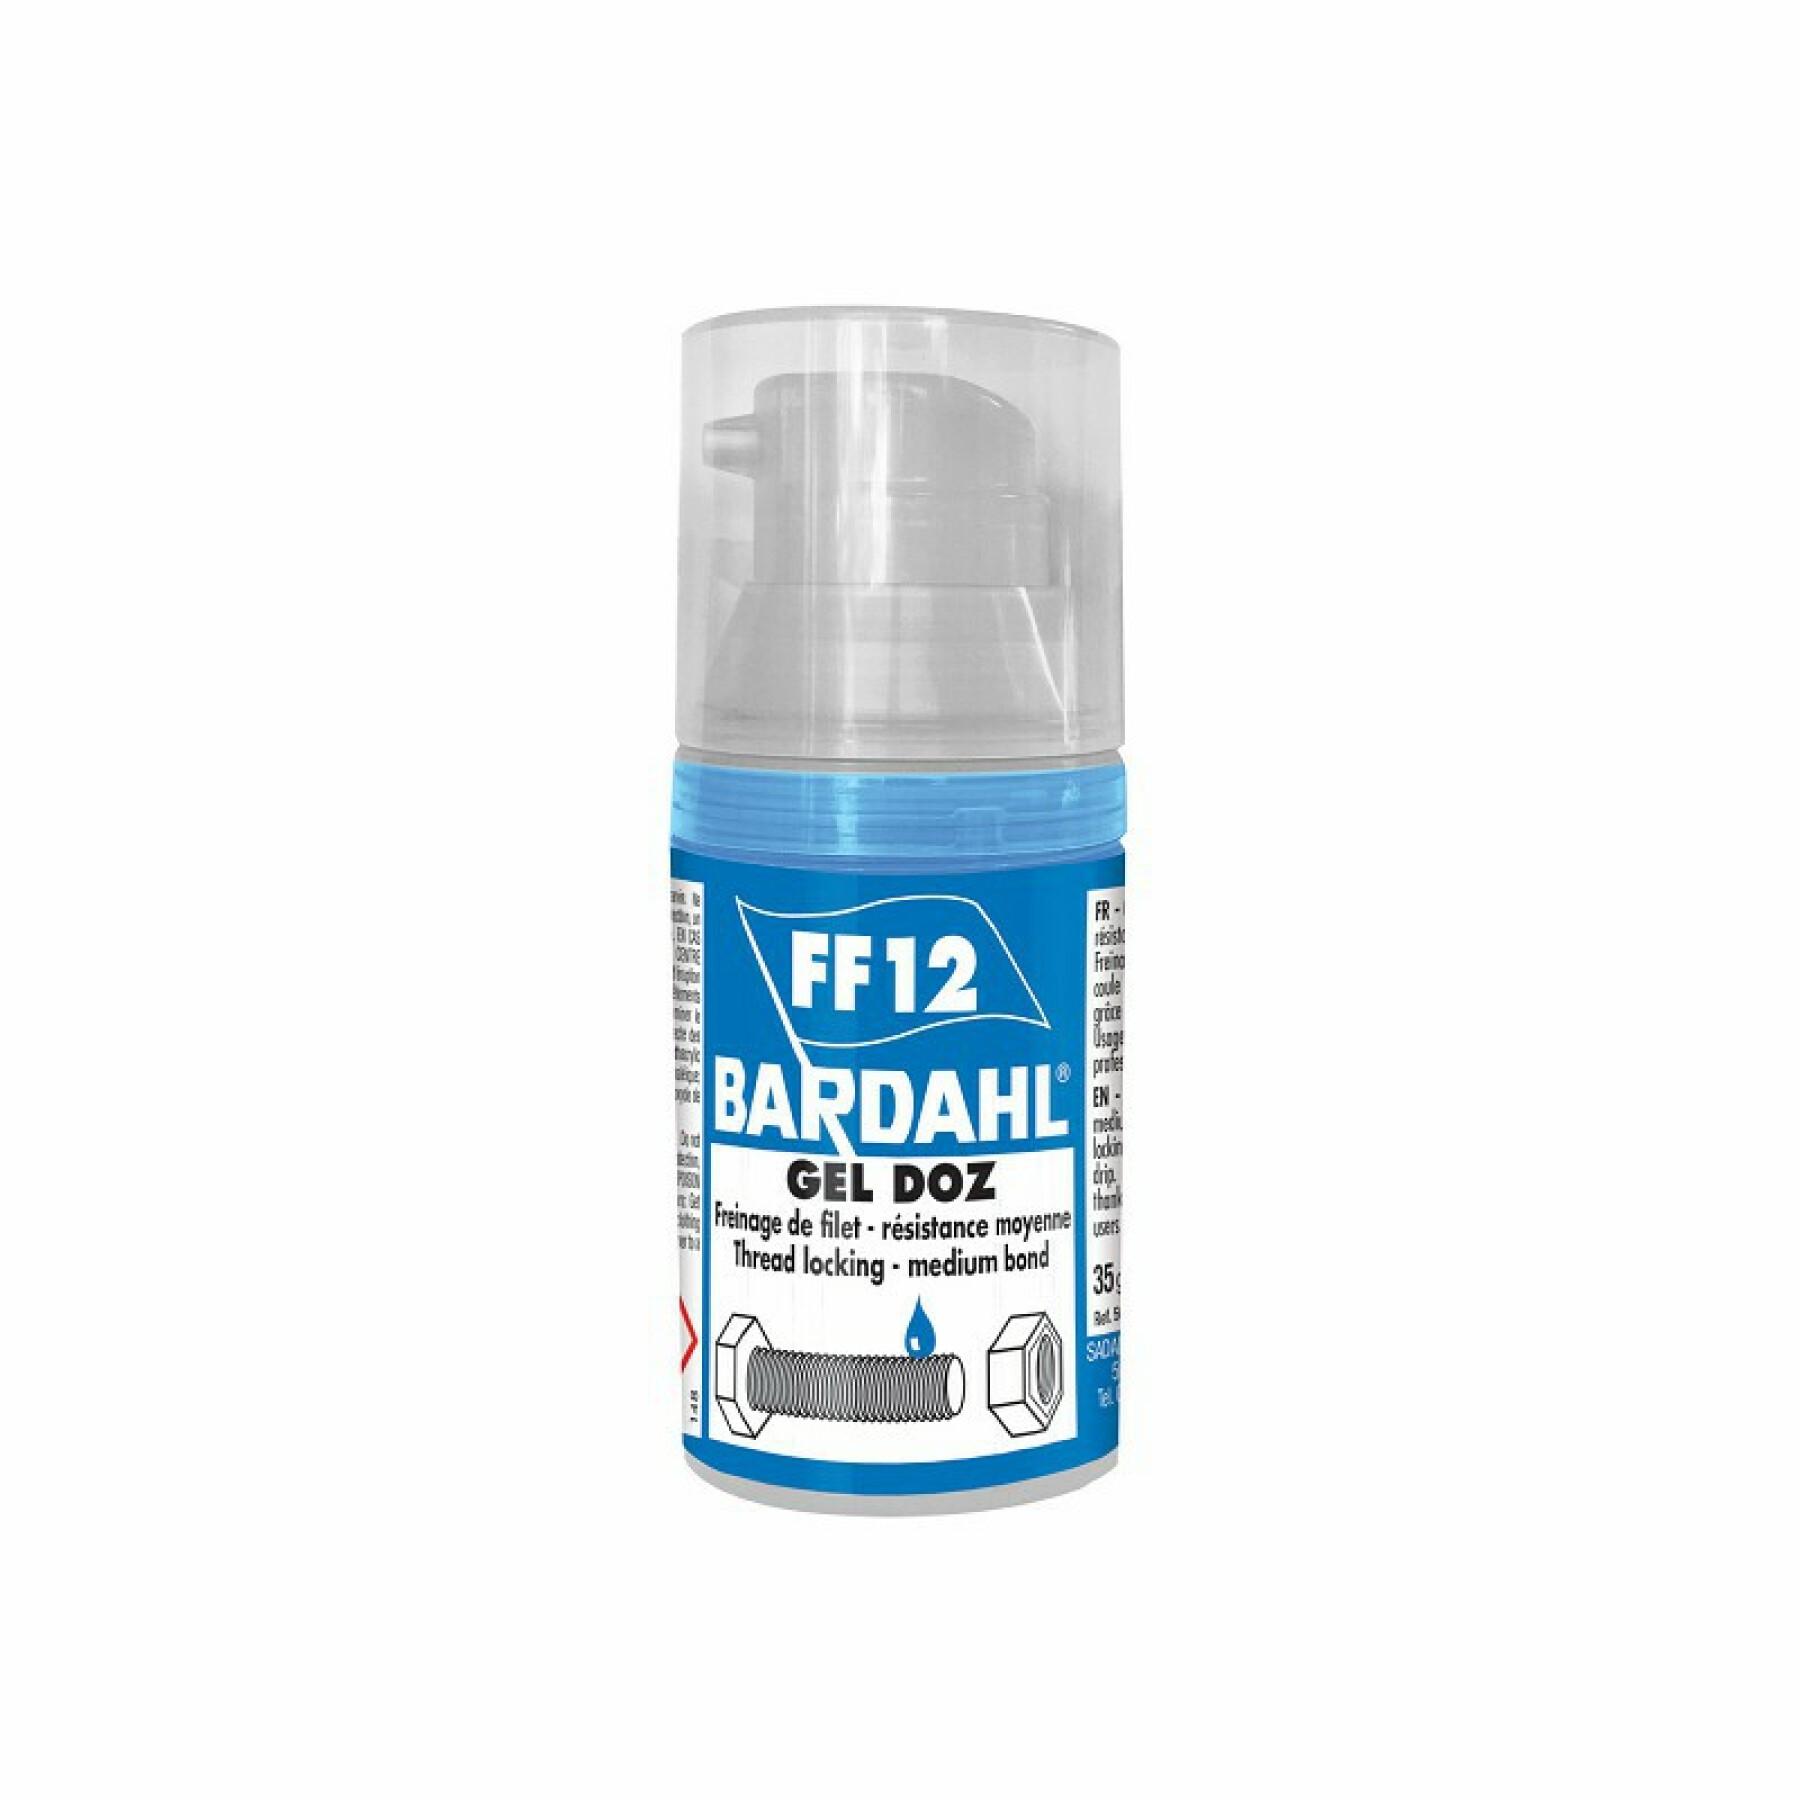 Adhesivo para frenos con rosca de bomba de alta resistencia Bardahl Geldoz Ff12 35g